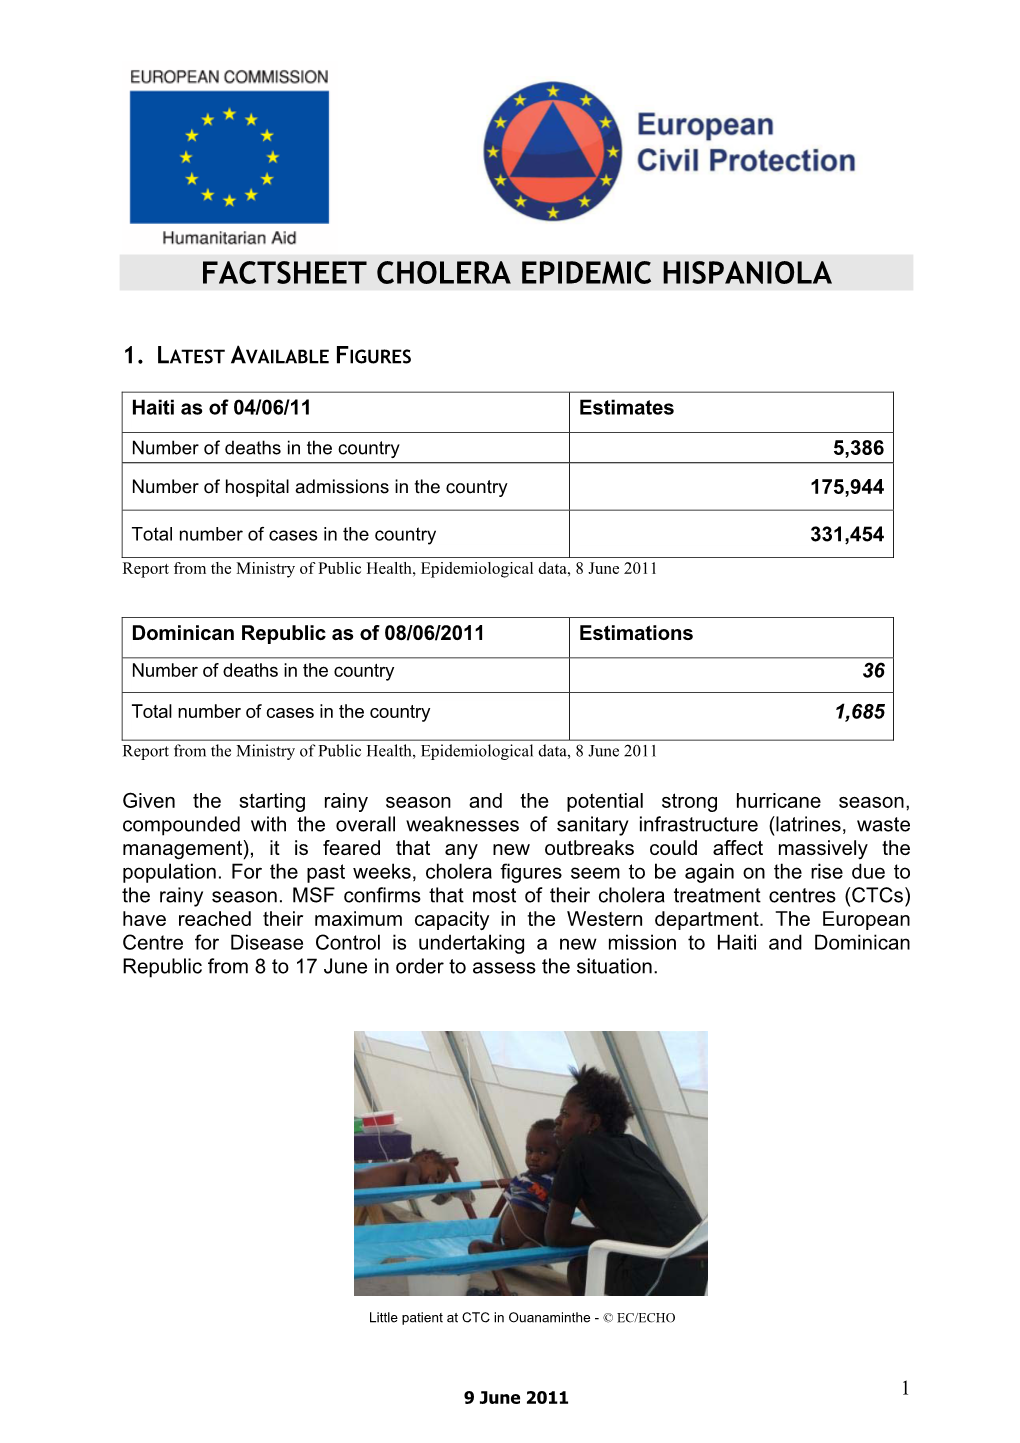 Factsheet Cholera Epidemic Hispaniola